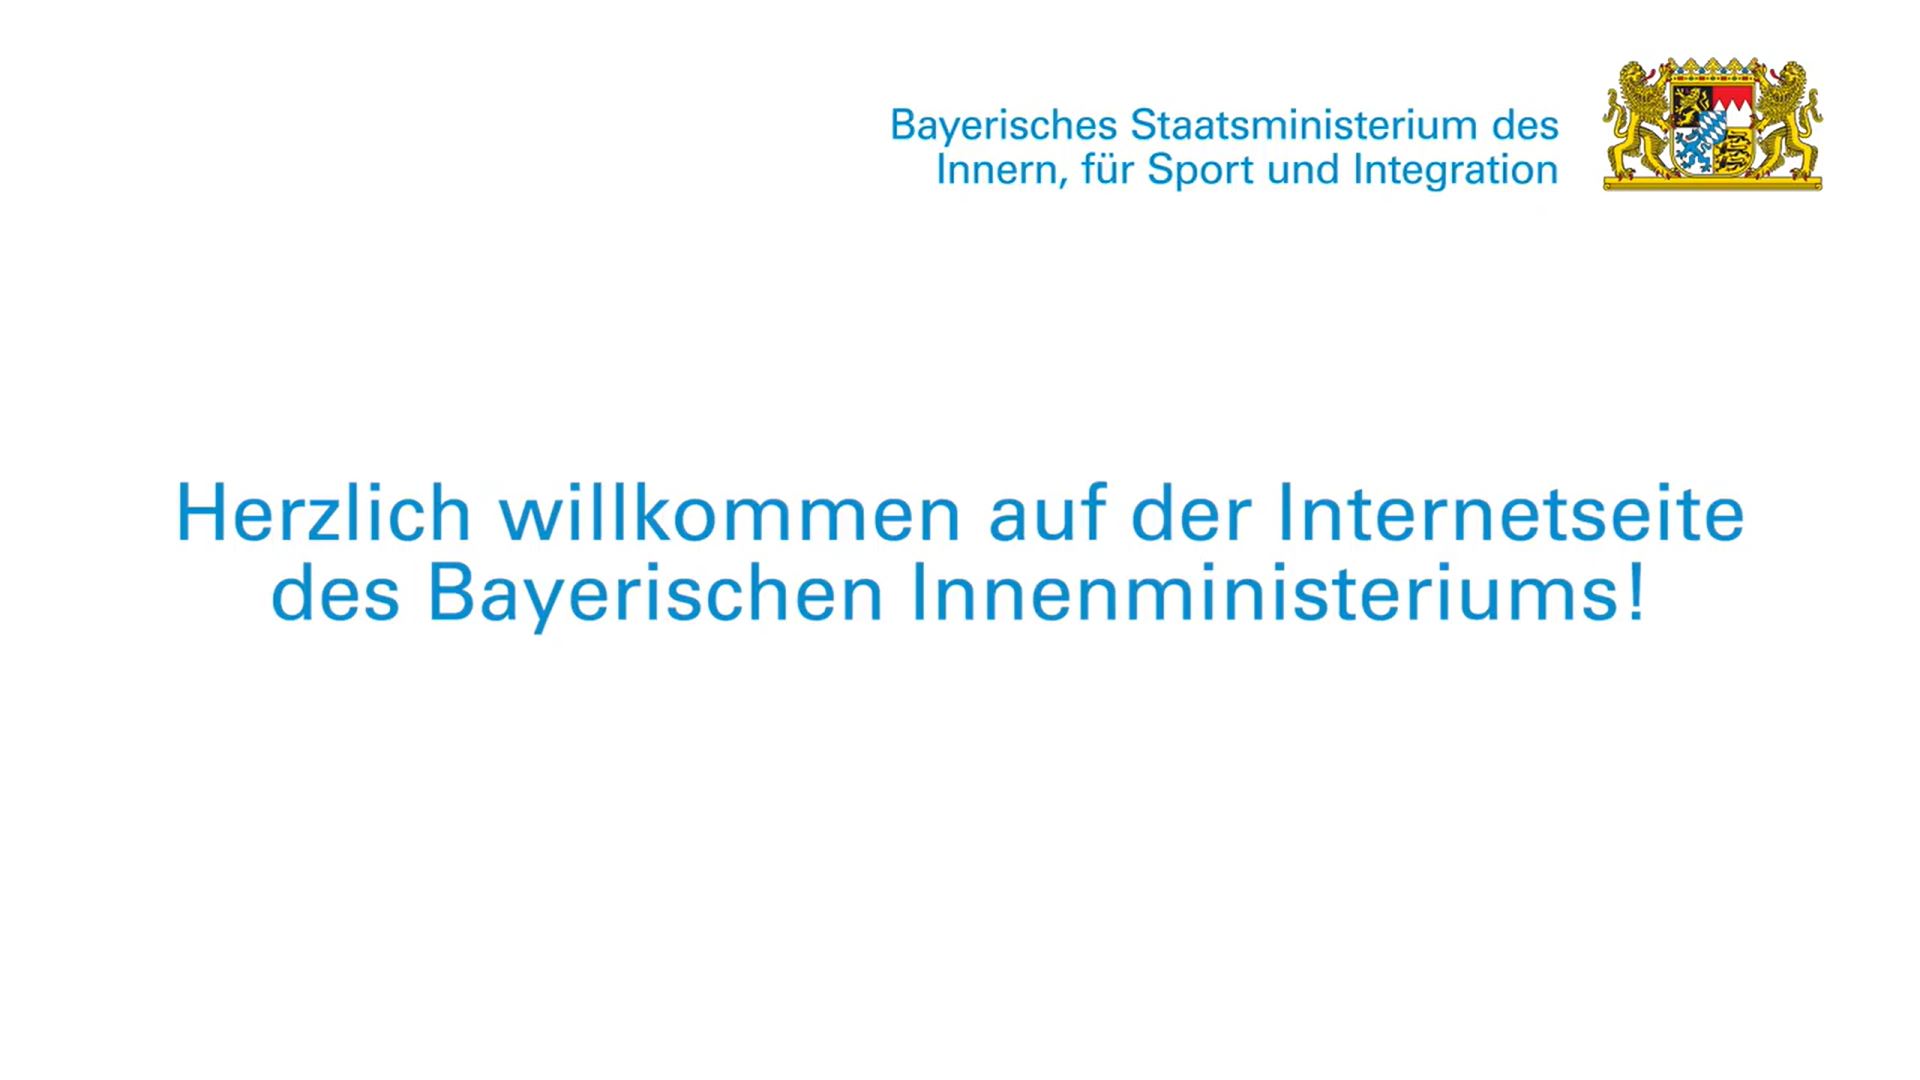 Das Video informiert über das Bayerische Staatsministerium des Innern, für Sport und Integration.